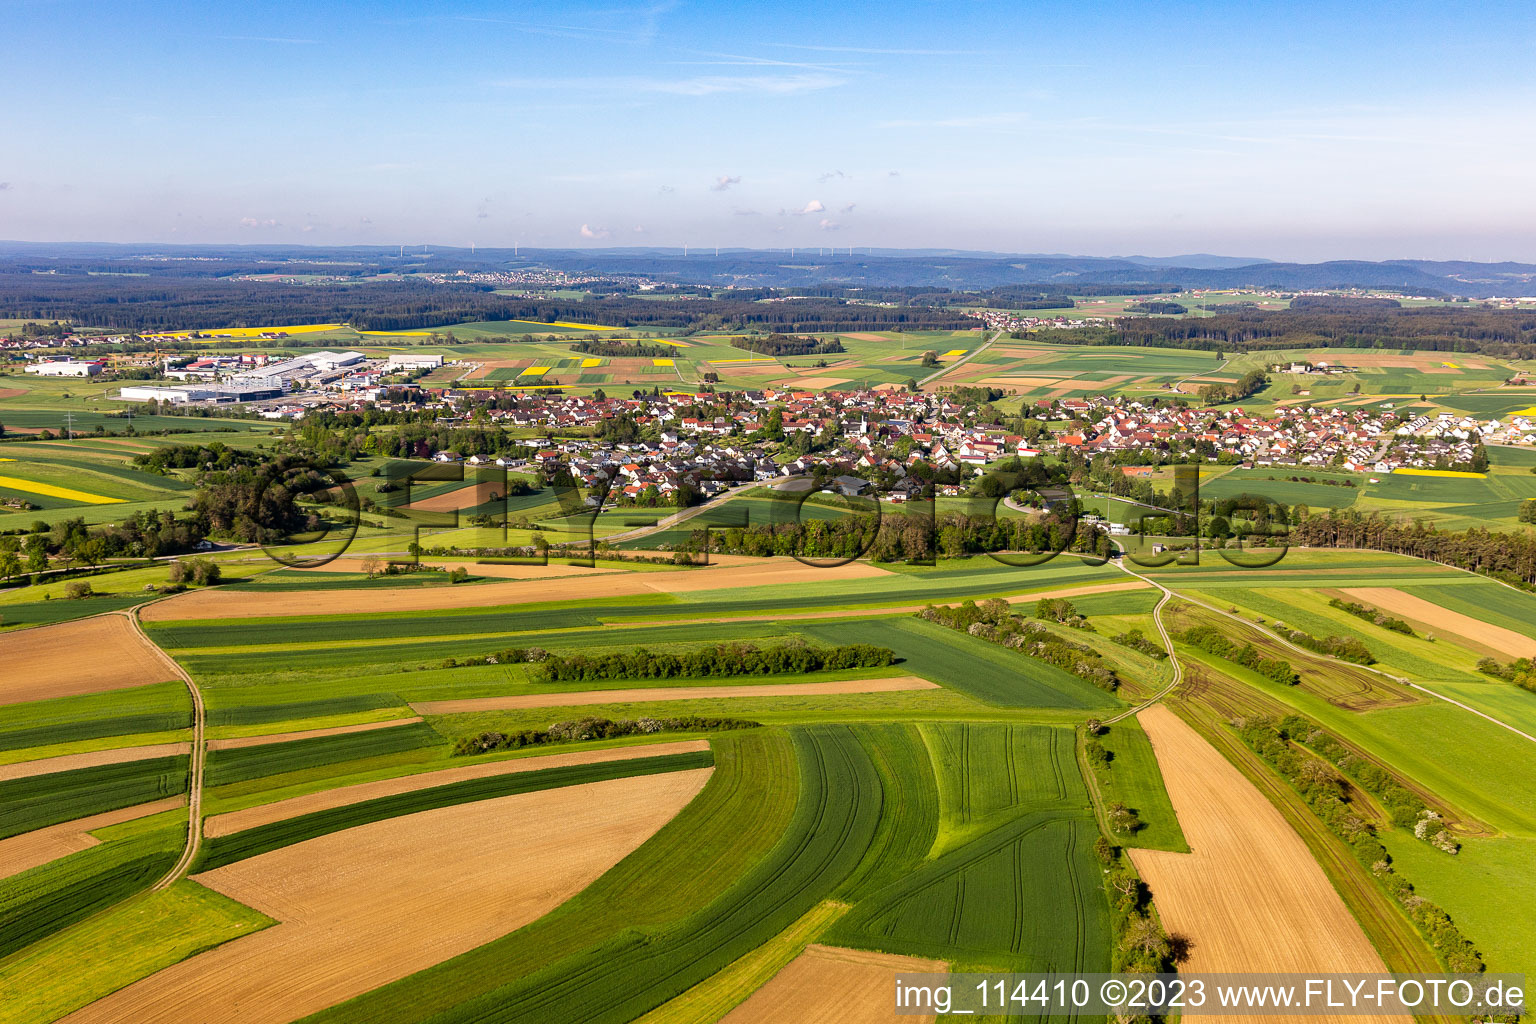 Vue aérienne de Schramberg dans le département Bade-Wurtemberg, Allemagne